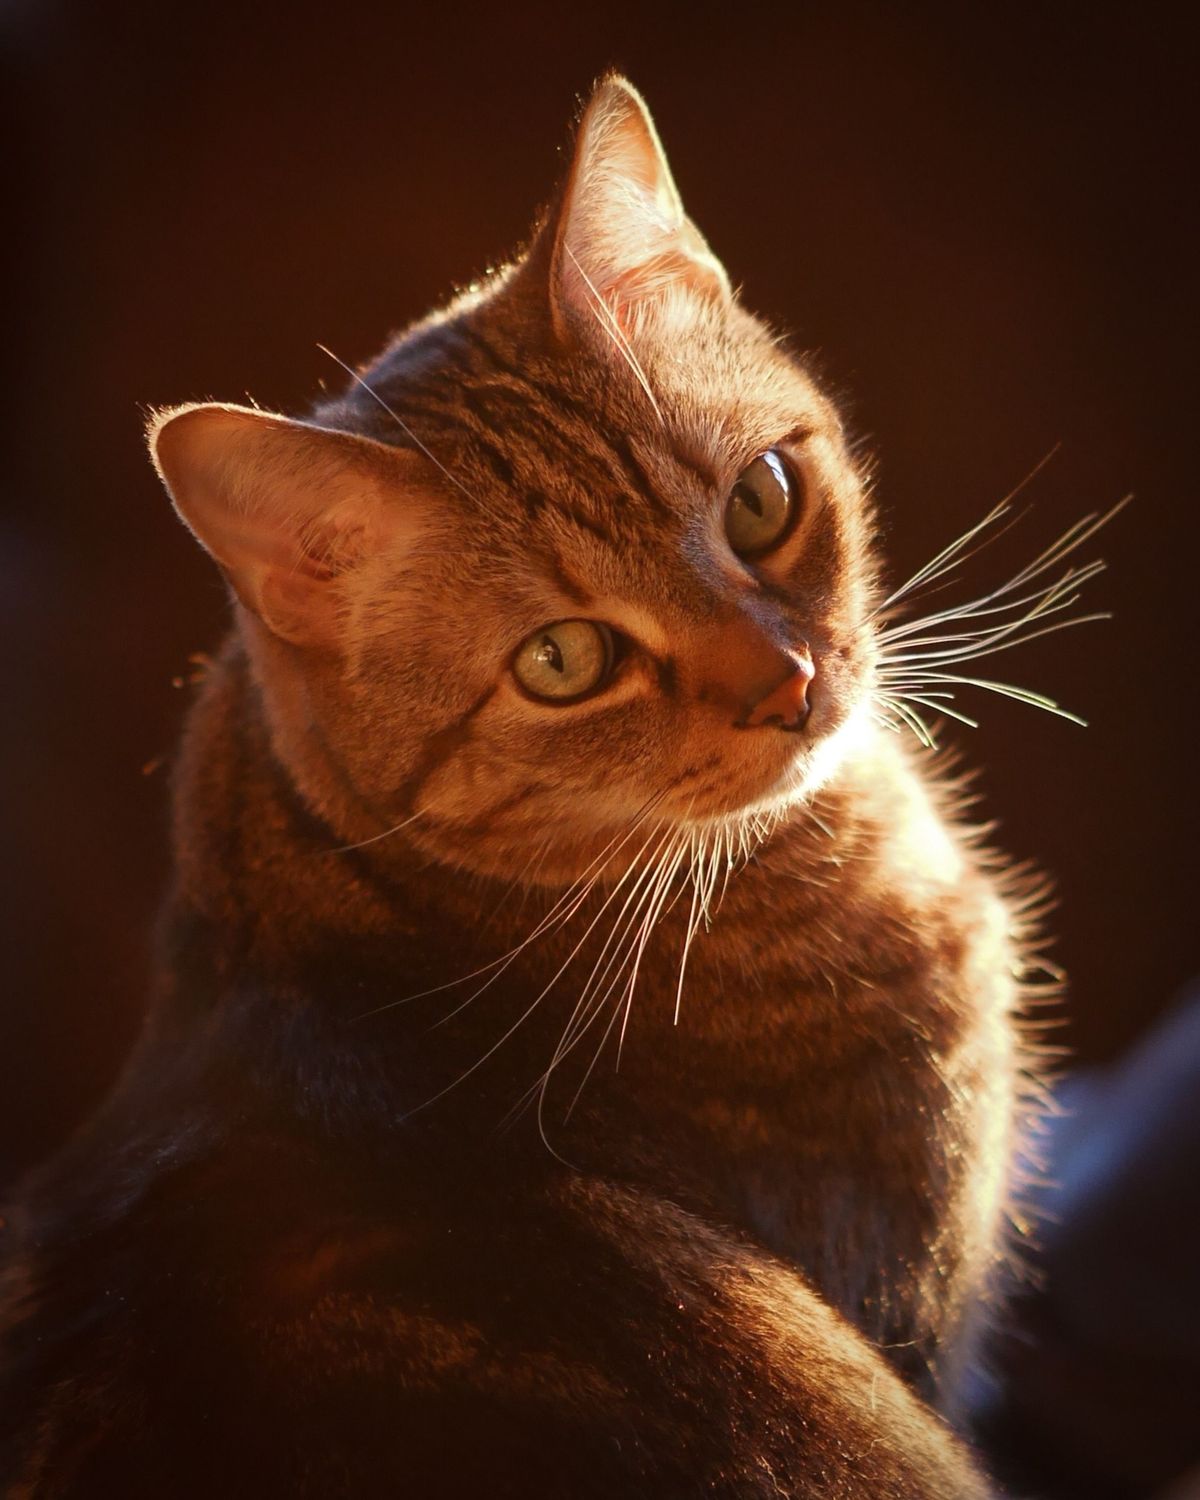 Onder de bijna zestig miljoen huiskatten in de VS is de klassiek gestreepte cyperse kat een van de populairste variteiten